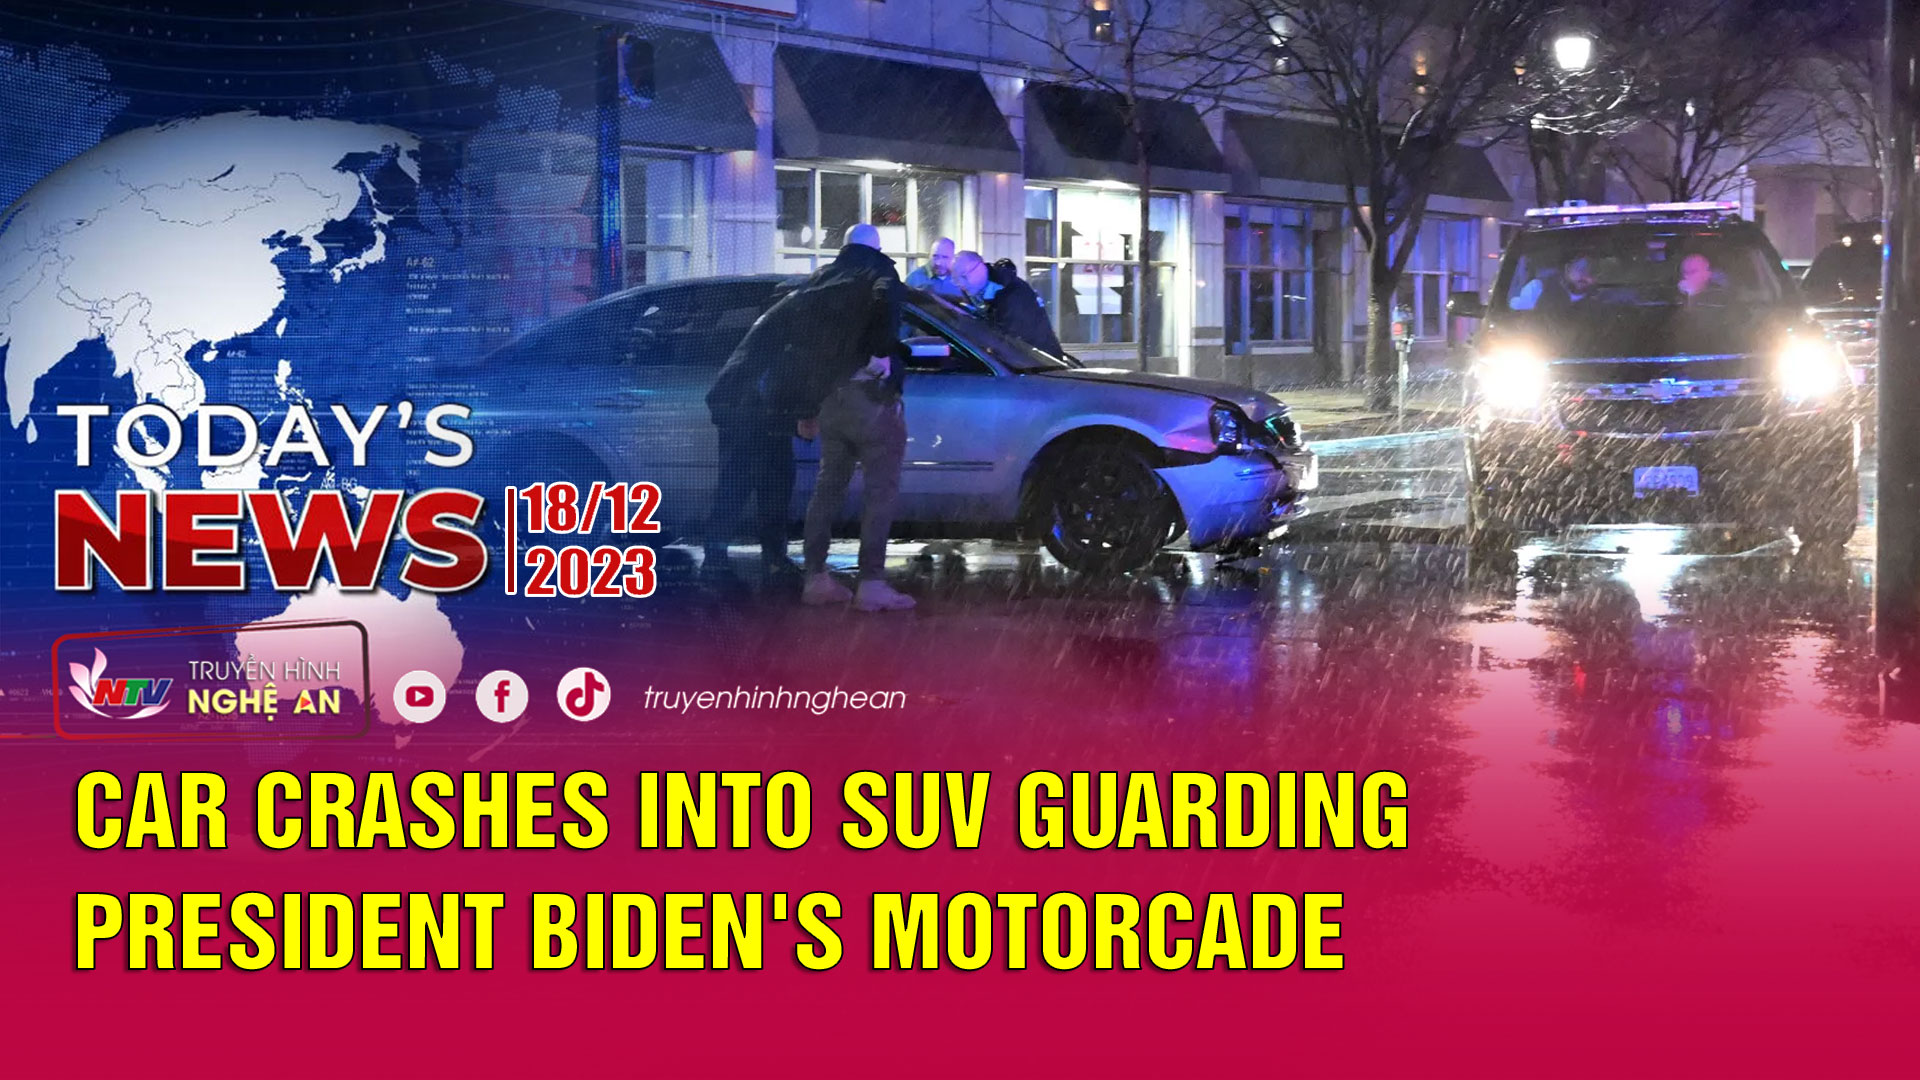 Today's News - 18/12/2023: Car crashes into SUV guarding President Biden's motorcade